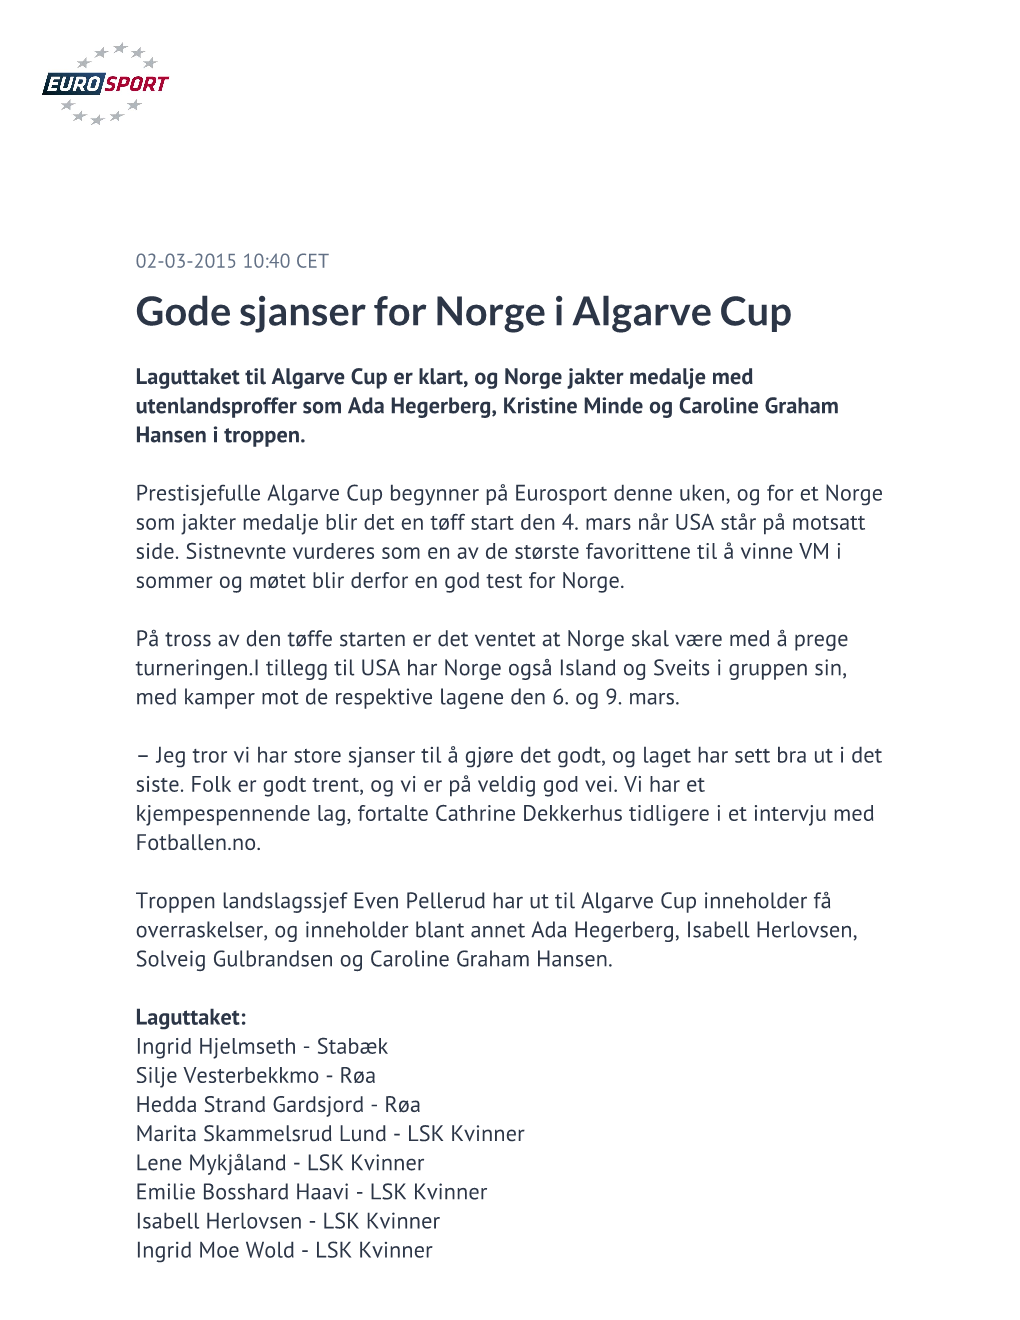 Gode Sjanser for Norge I Algarve Cup